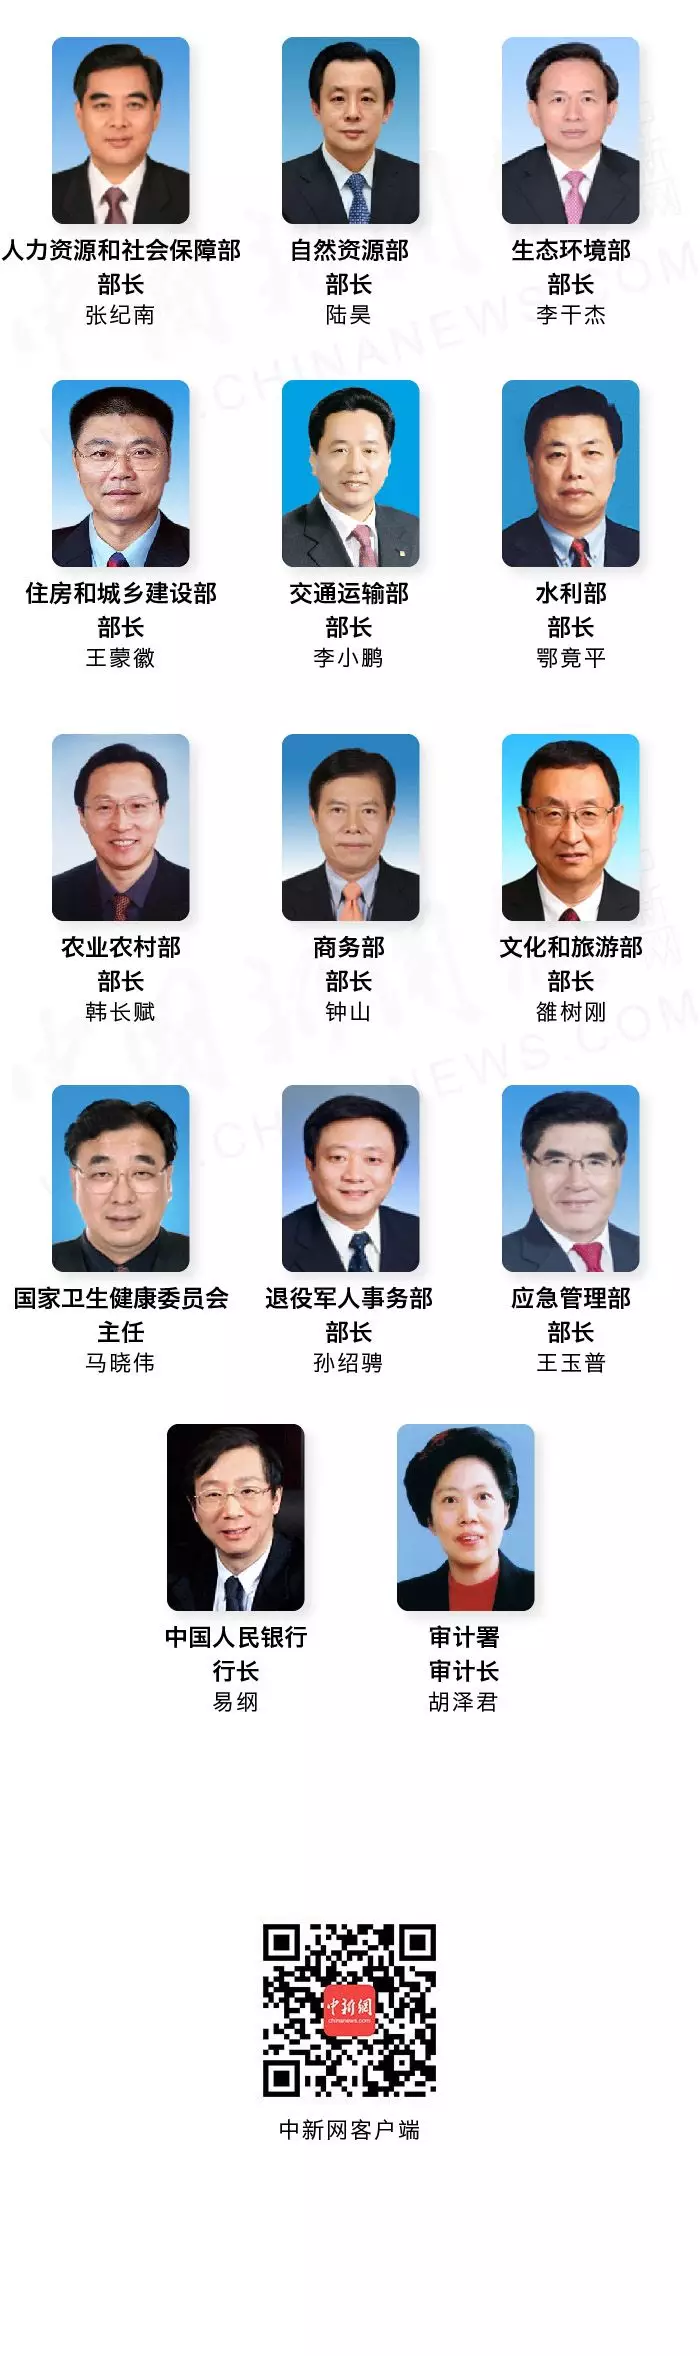 孙绍骋为退役军人事务部部长, 王玉普为应急管理部部长, 易纲为中国